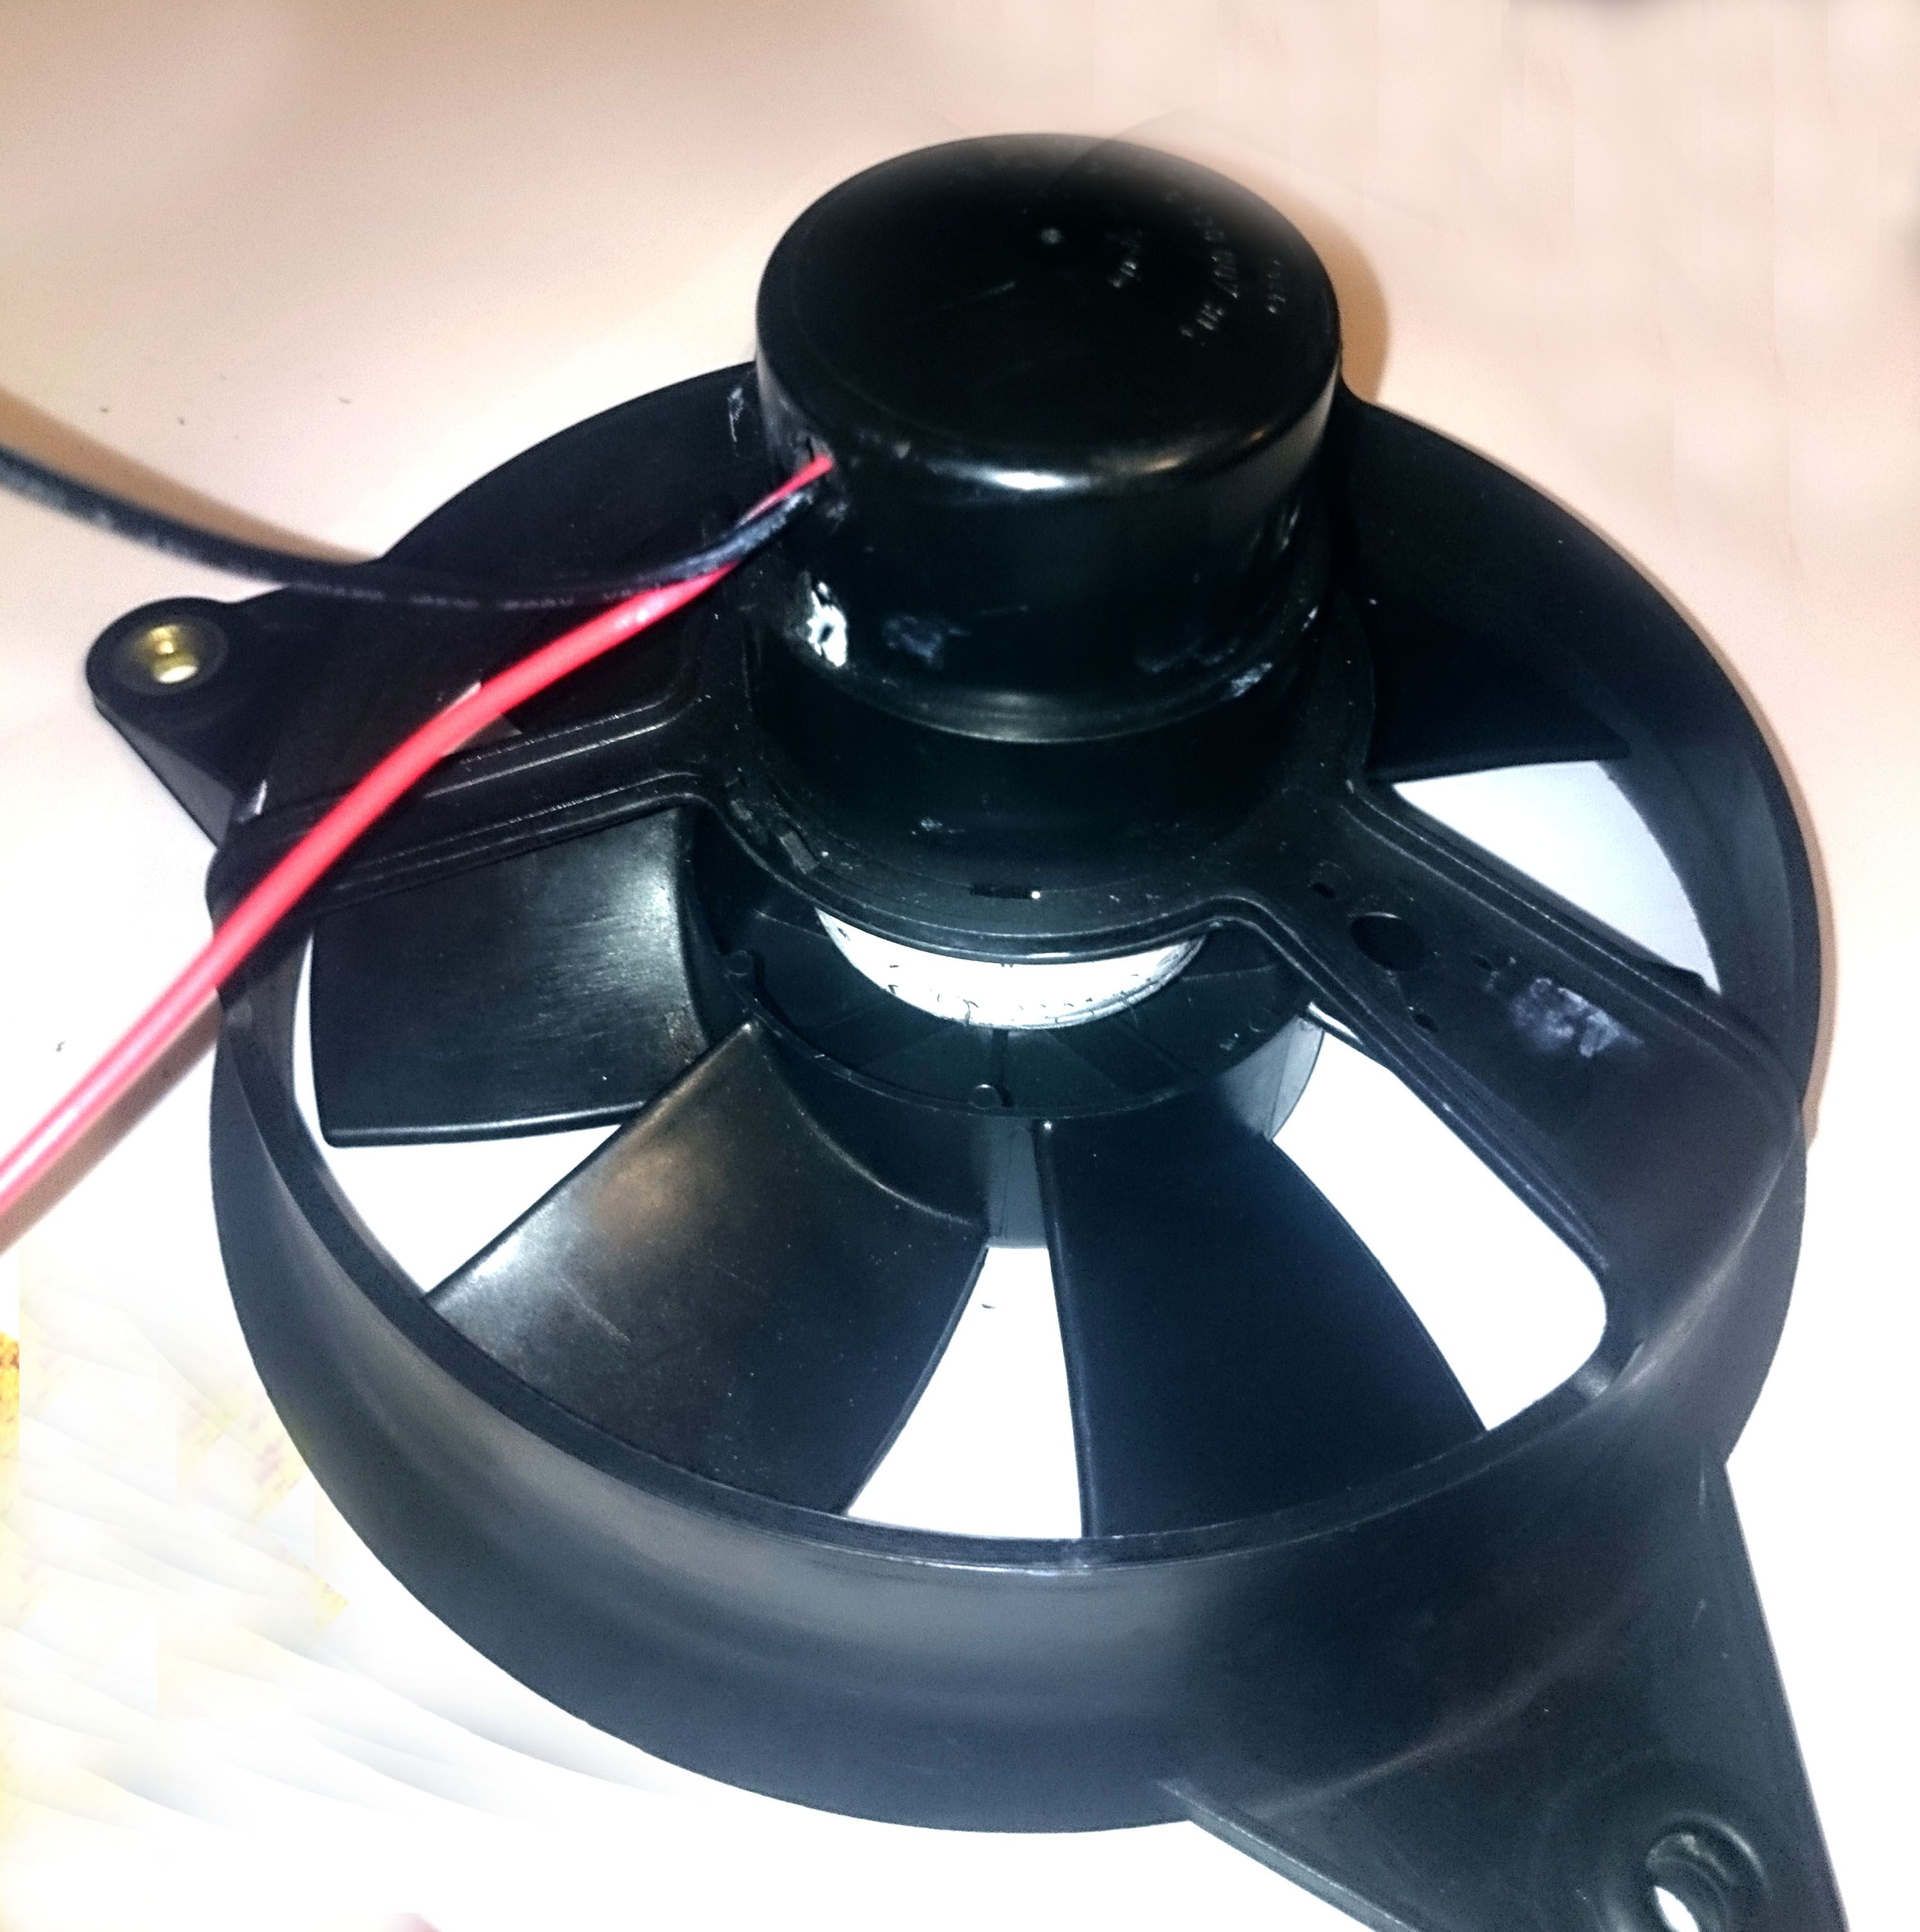 Replacing the Cooling Fan 73f1b74c3ce549befb0de19cbcb25d0e